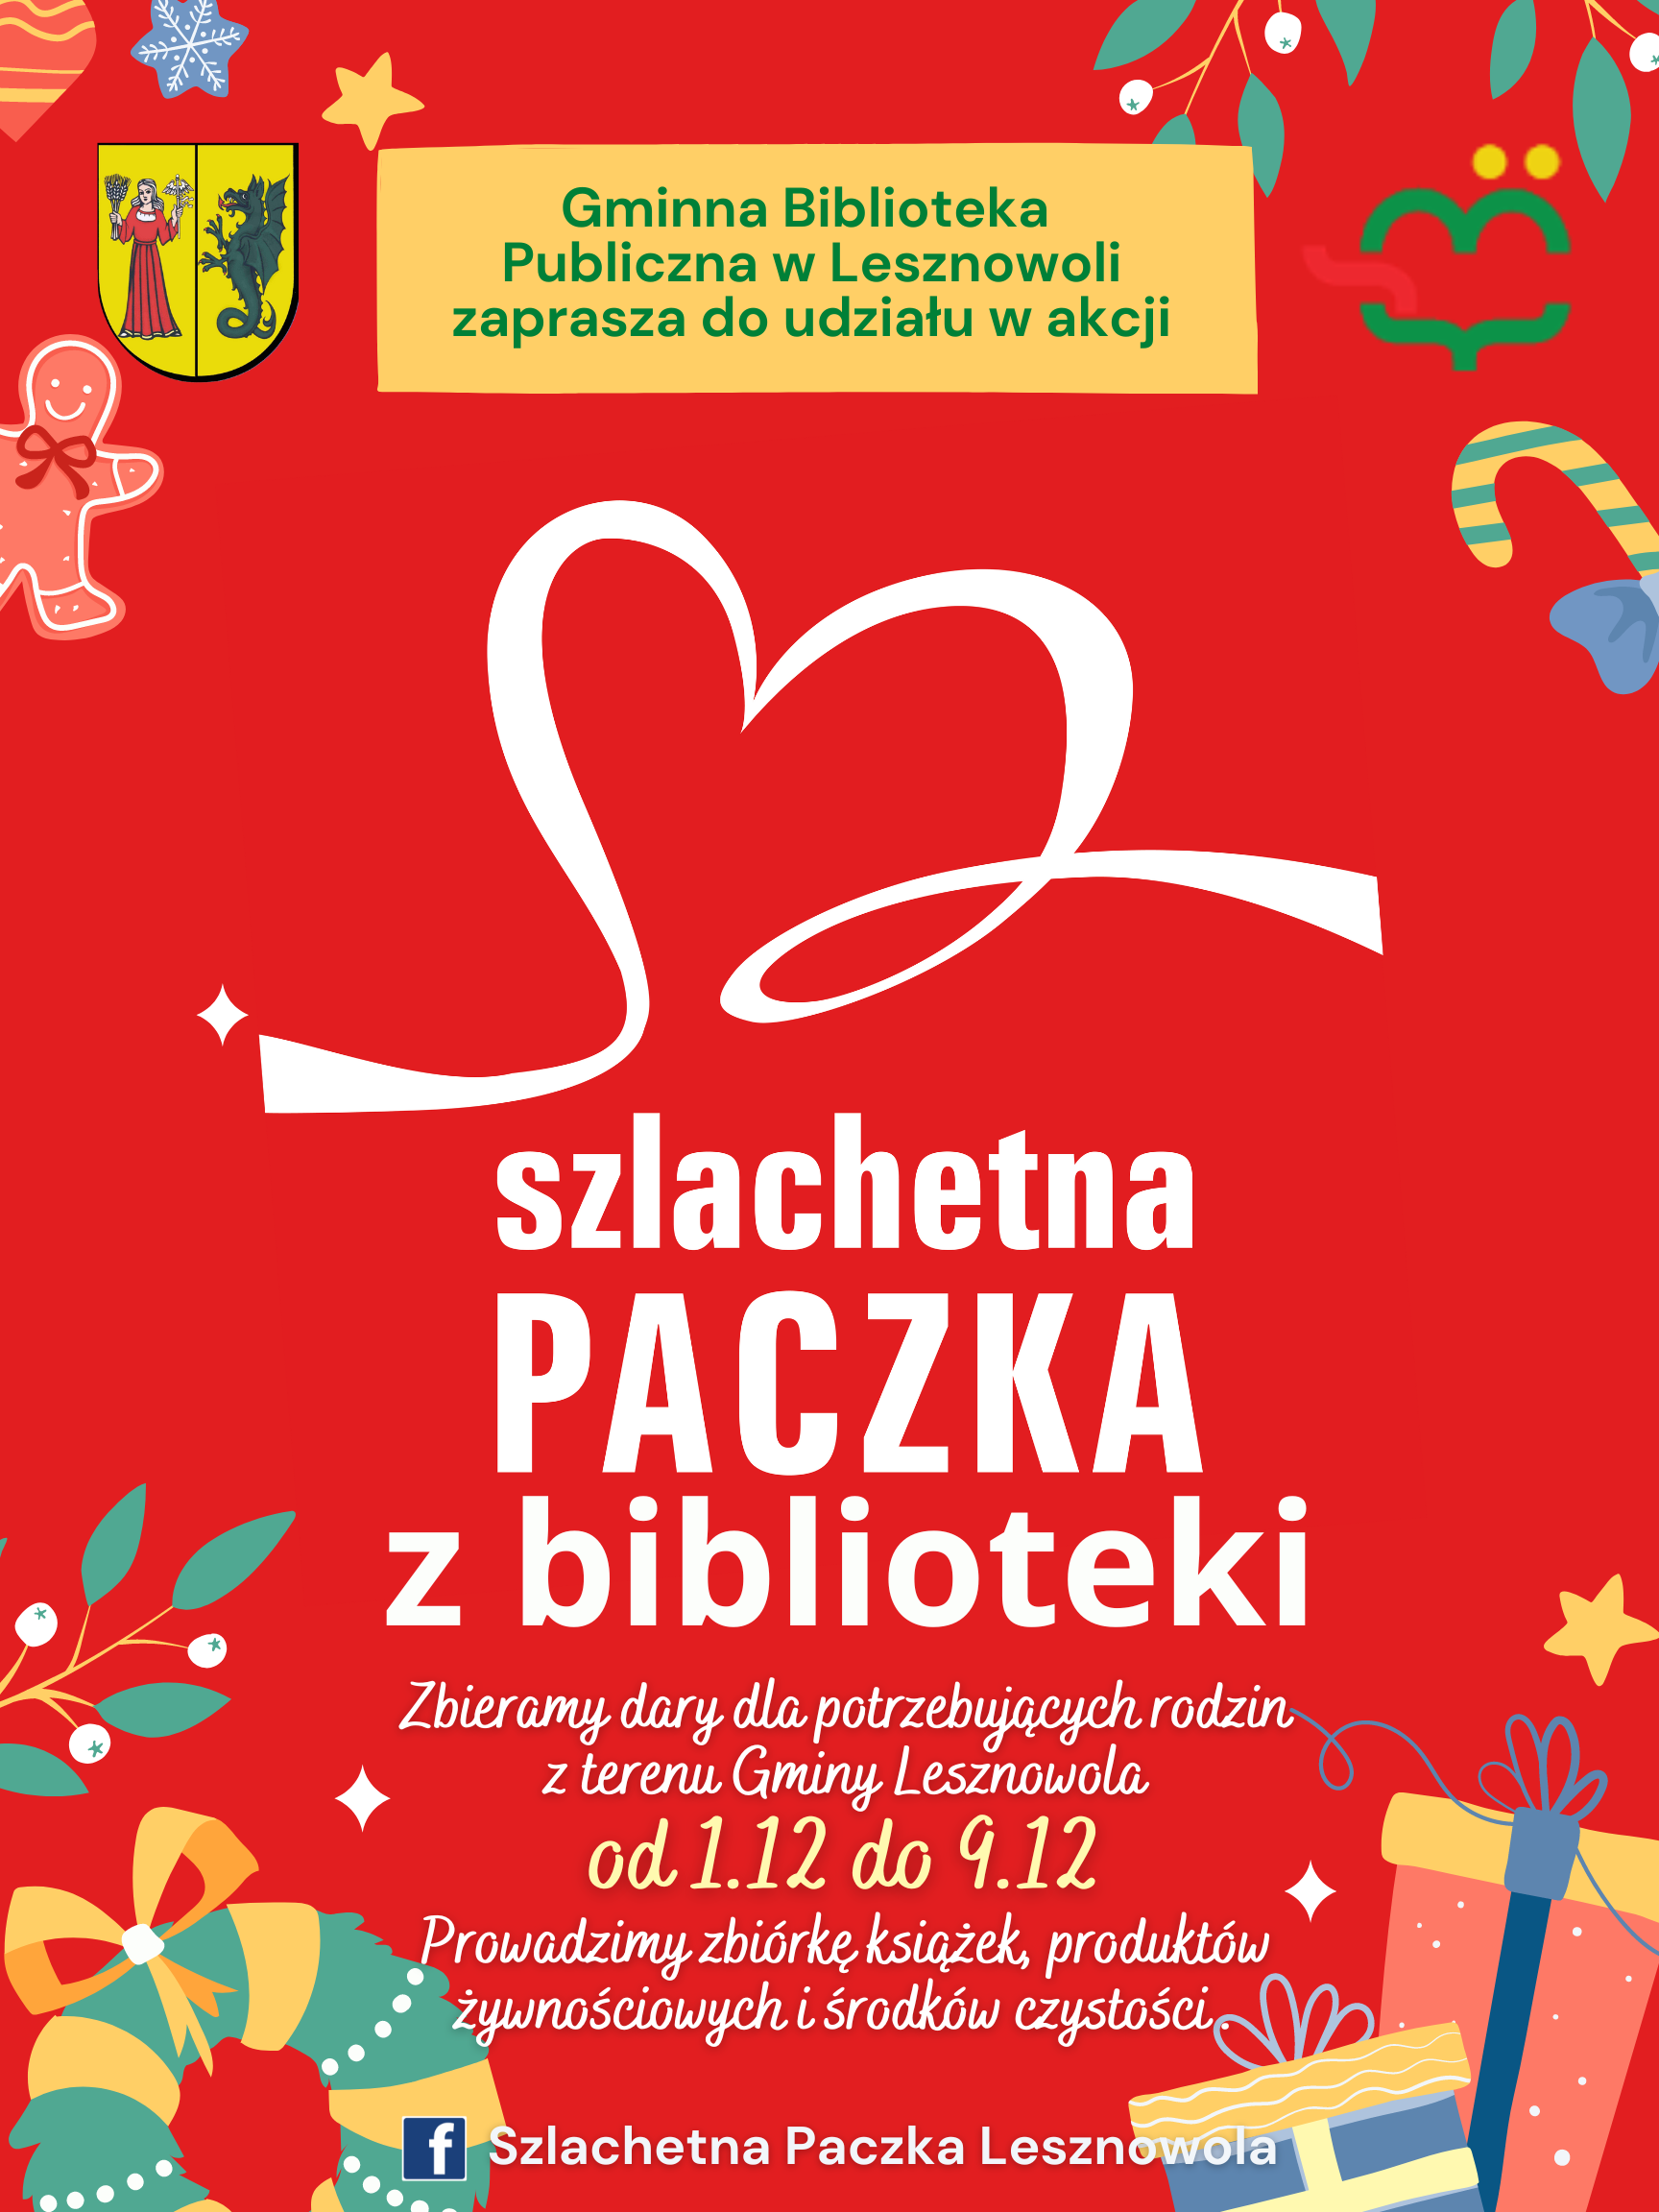 You are currently viewing Szlachetna Paczka z biblioteki